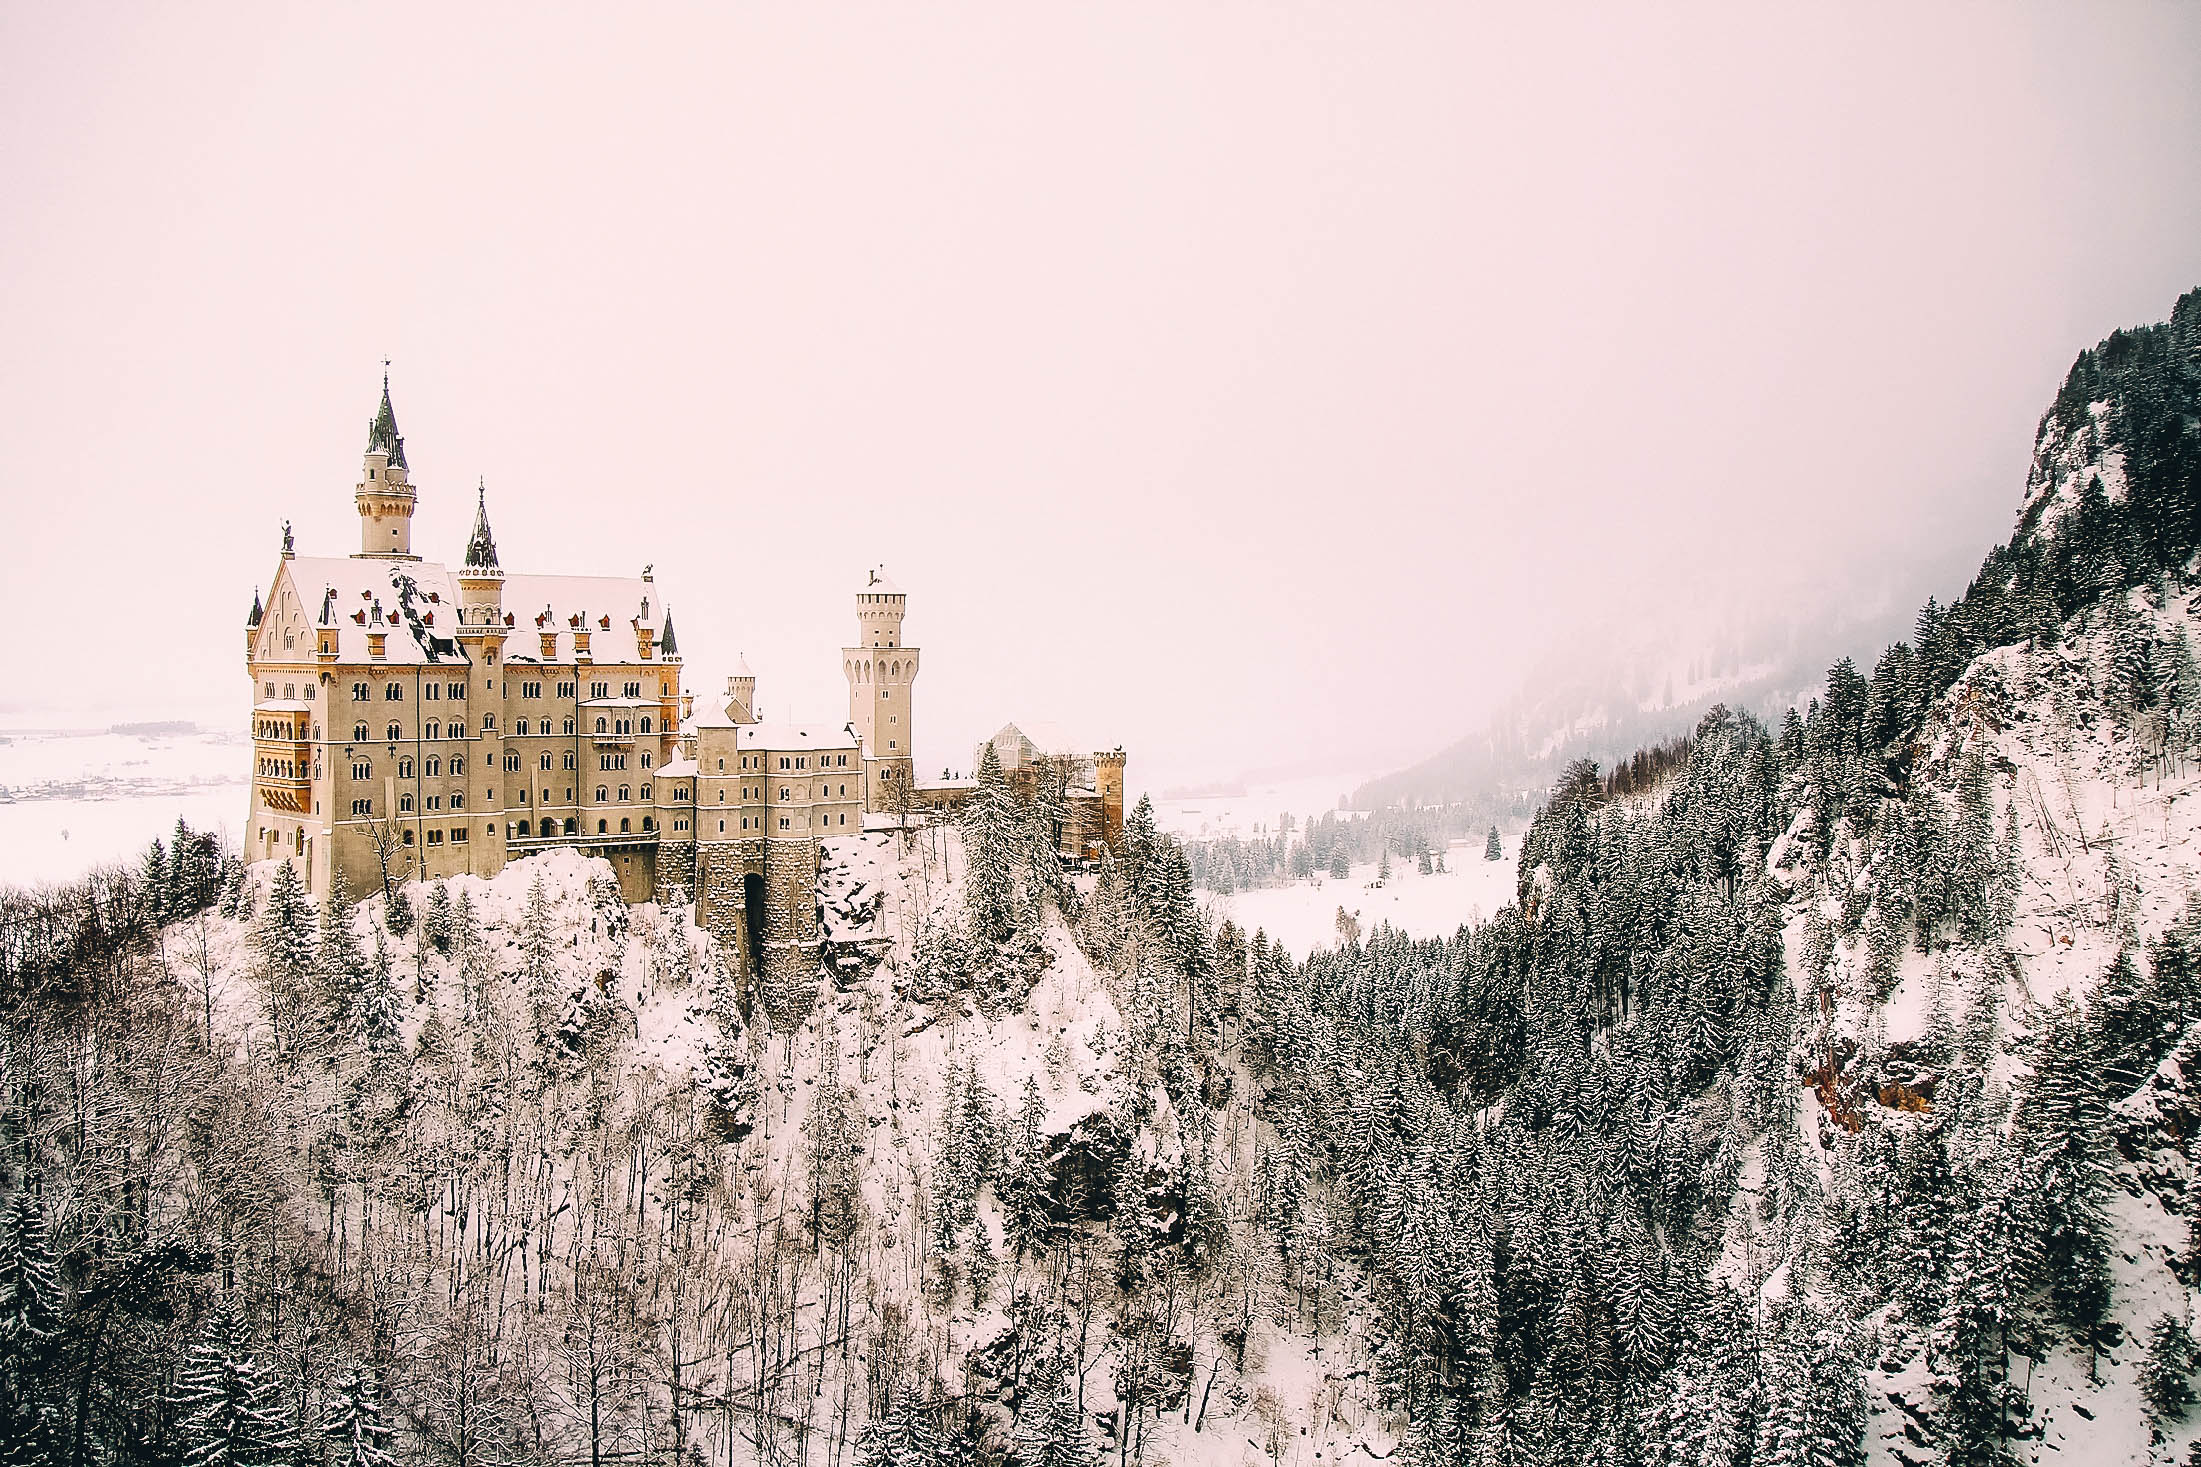 snowy Neuschwanstein castle